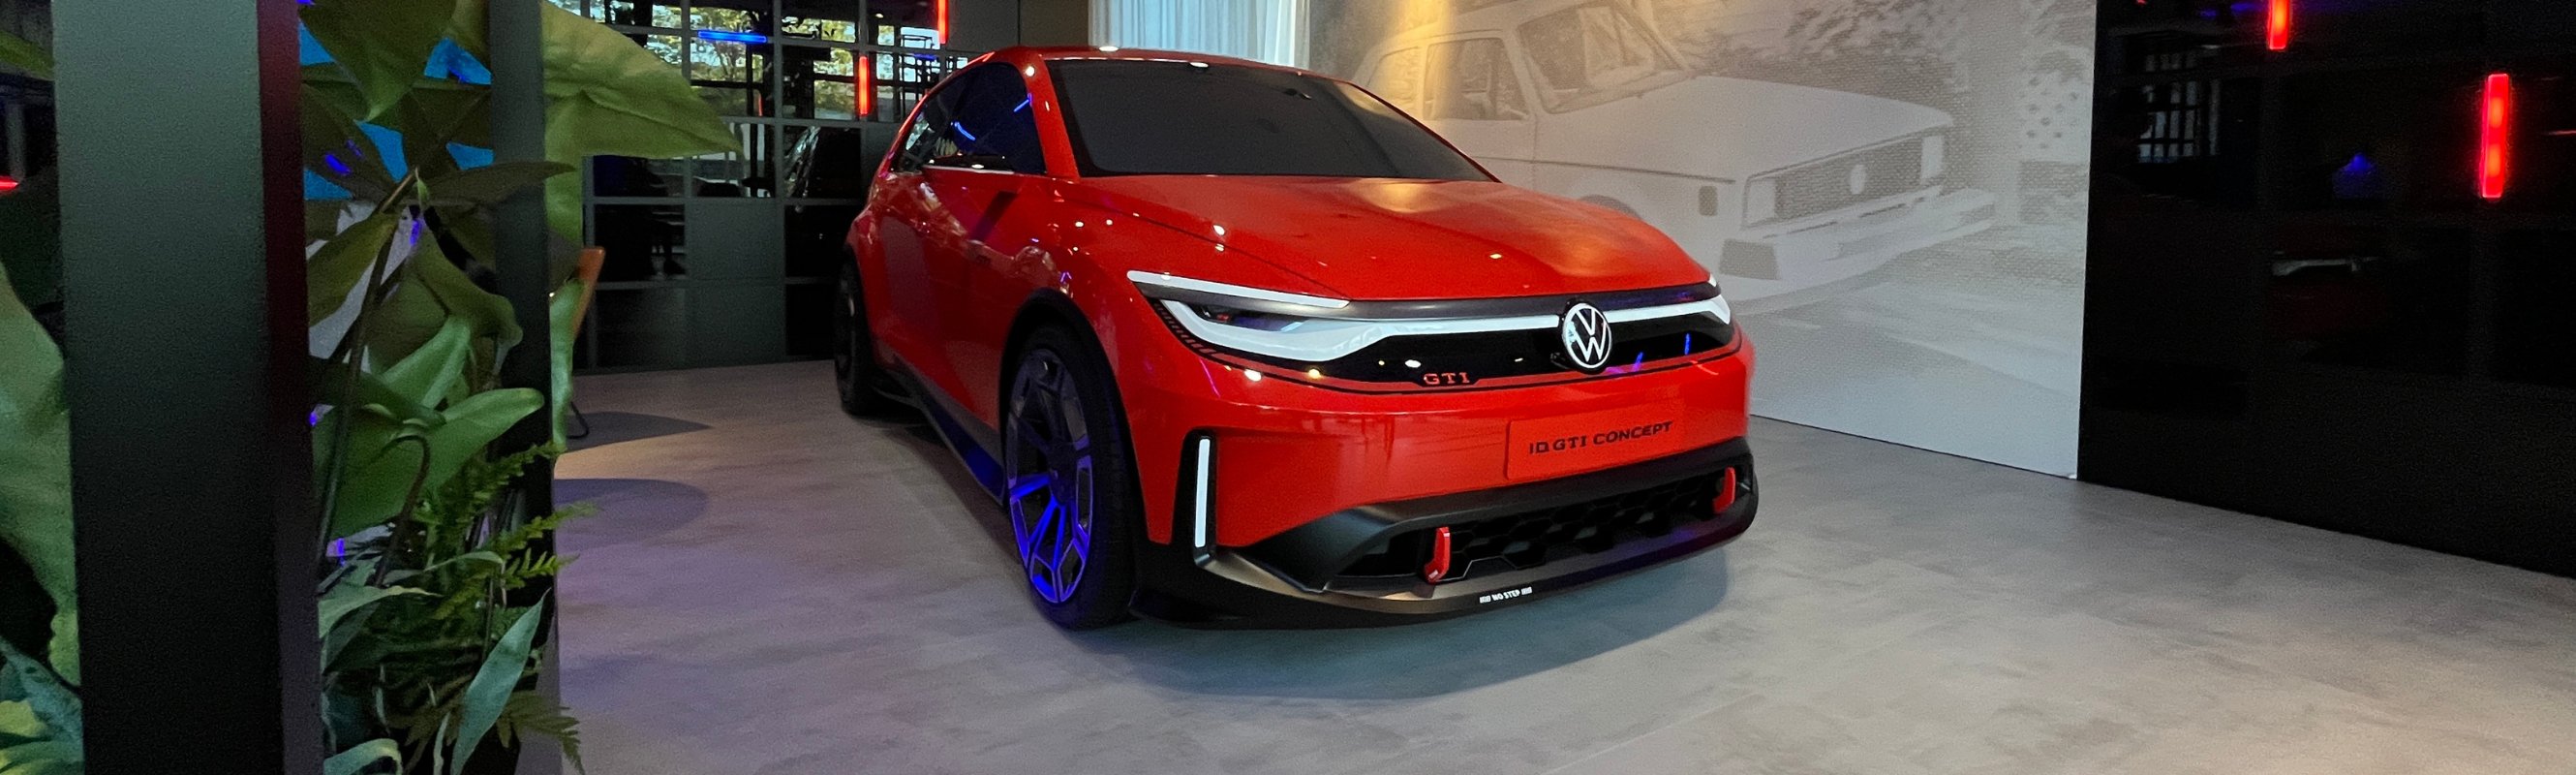 Audi și Volkswagen la Salonul Auto de la Munchen: electrice din viitor